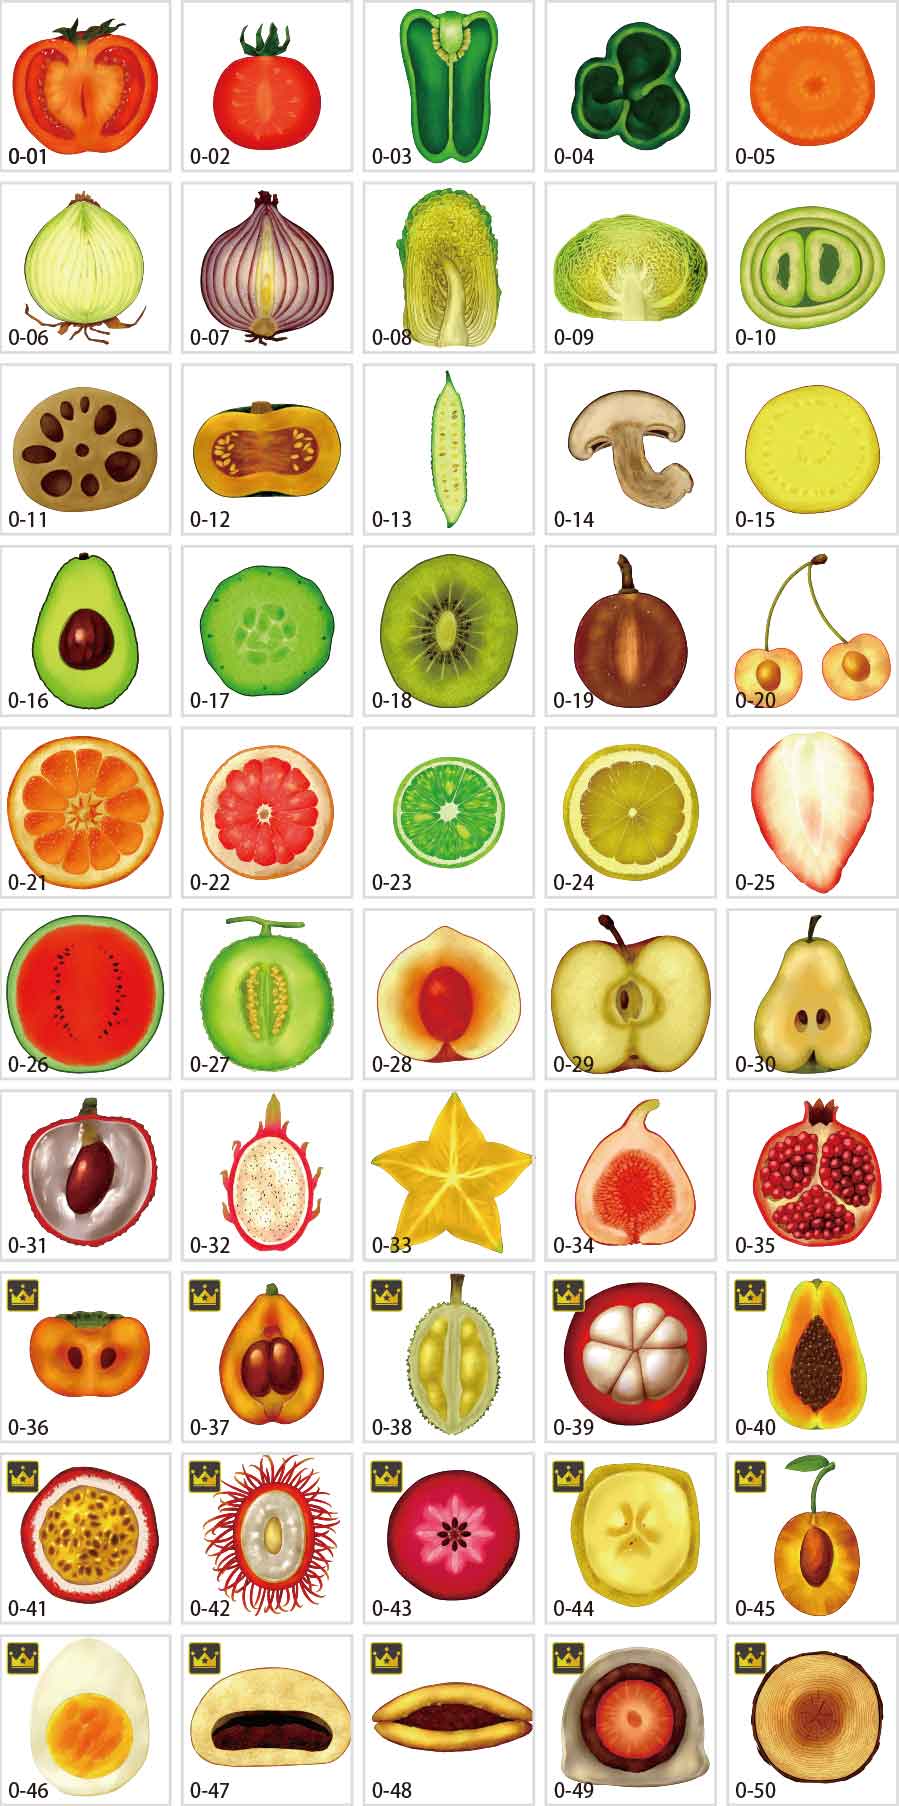 Fruit cross section illustration